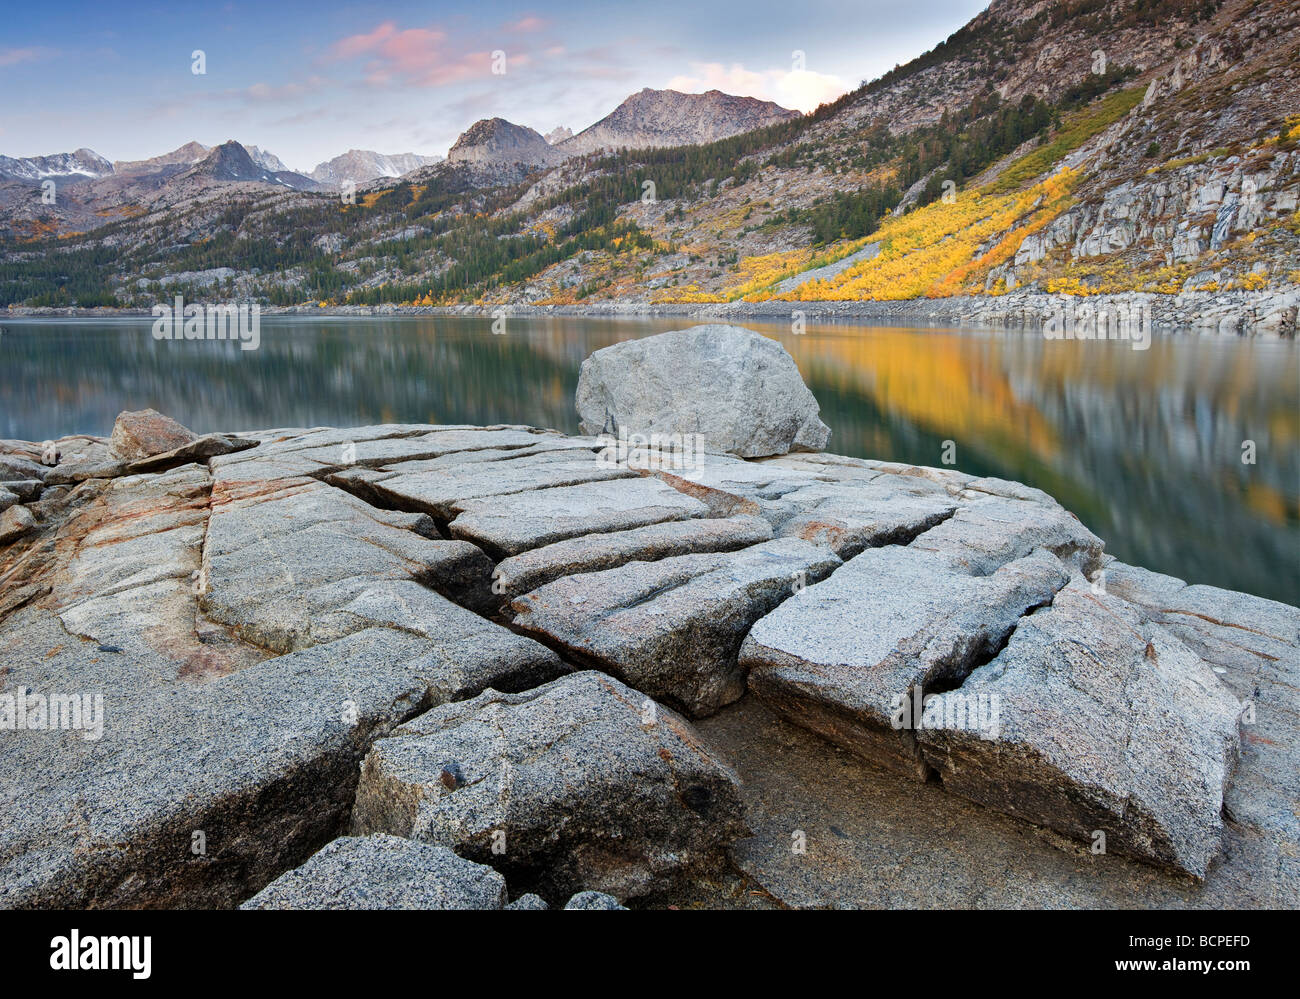 La sponda meridionale del lago con fall aspens colorati e split di roccia di granito di Inyo National Forest Eastern Sierras California Foto Stock